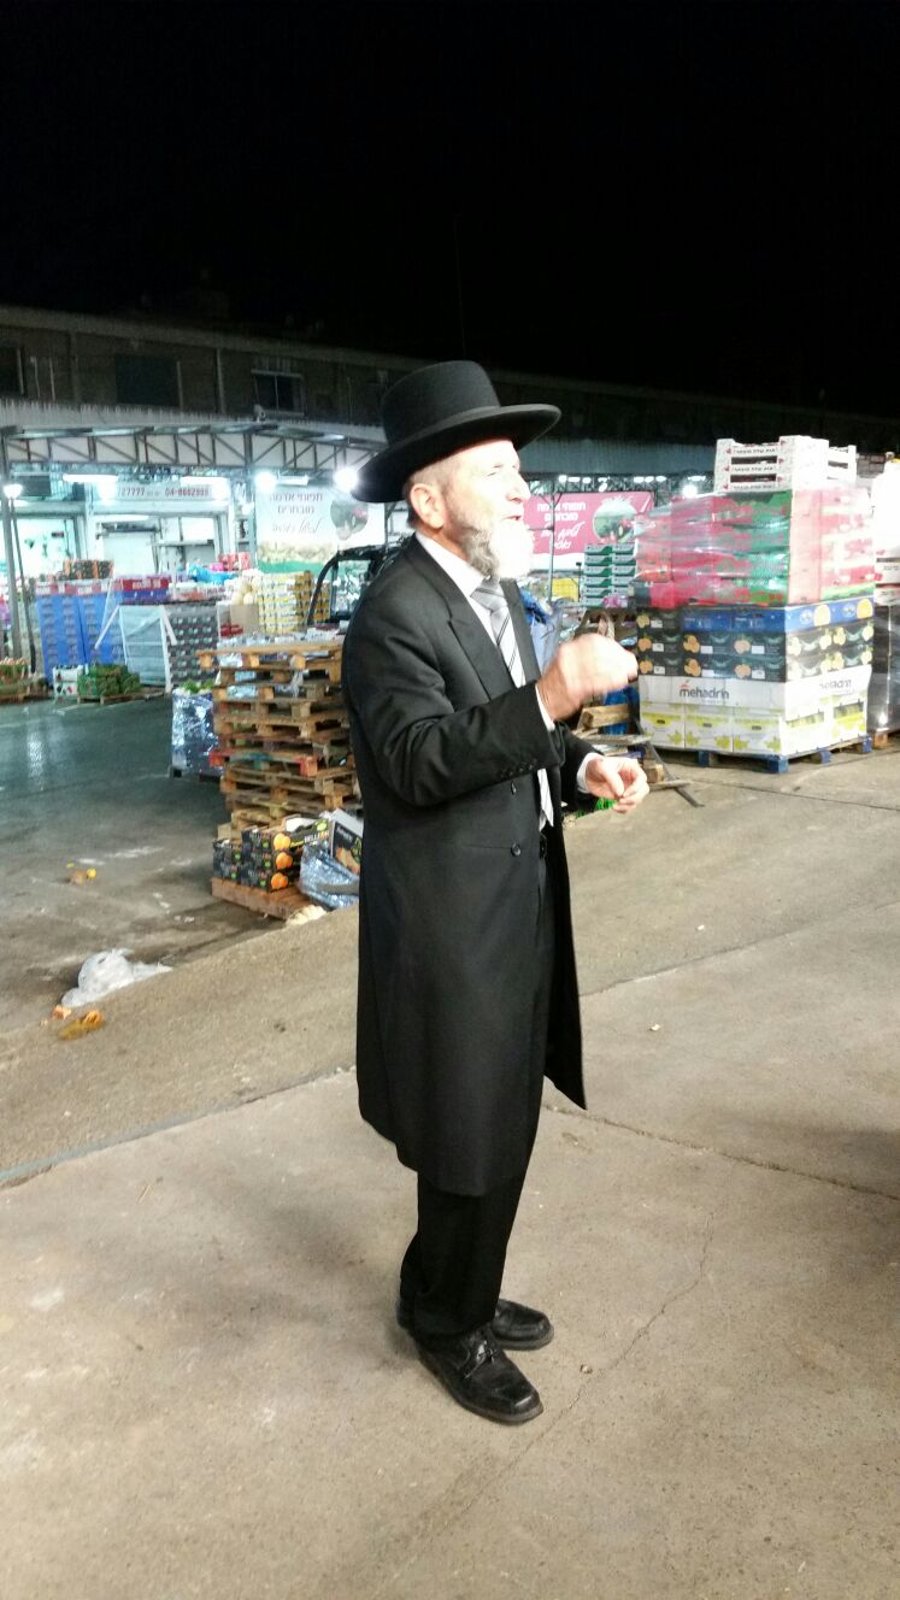 הרב אברמובסקי ערך ביקור פתע בשוק הסיטונאי בחיפה